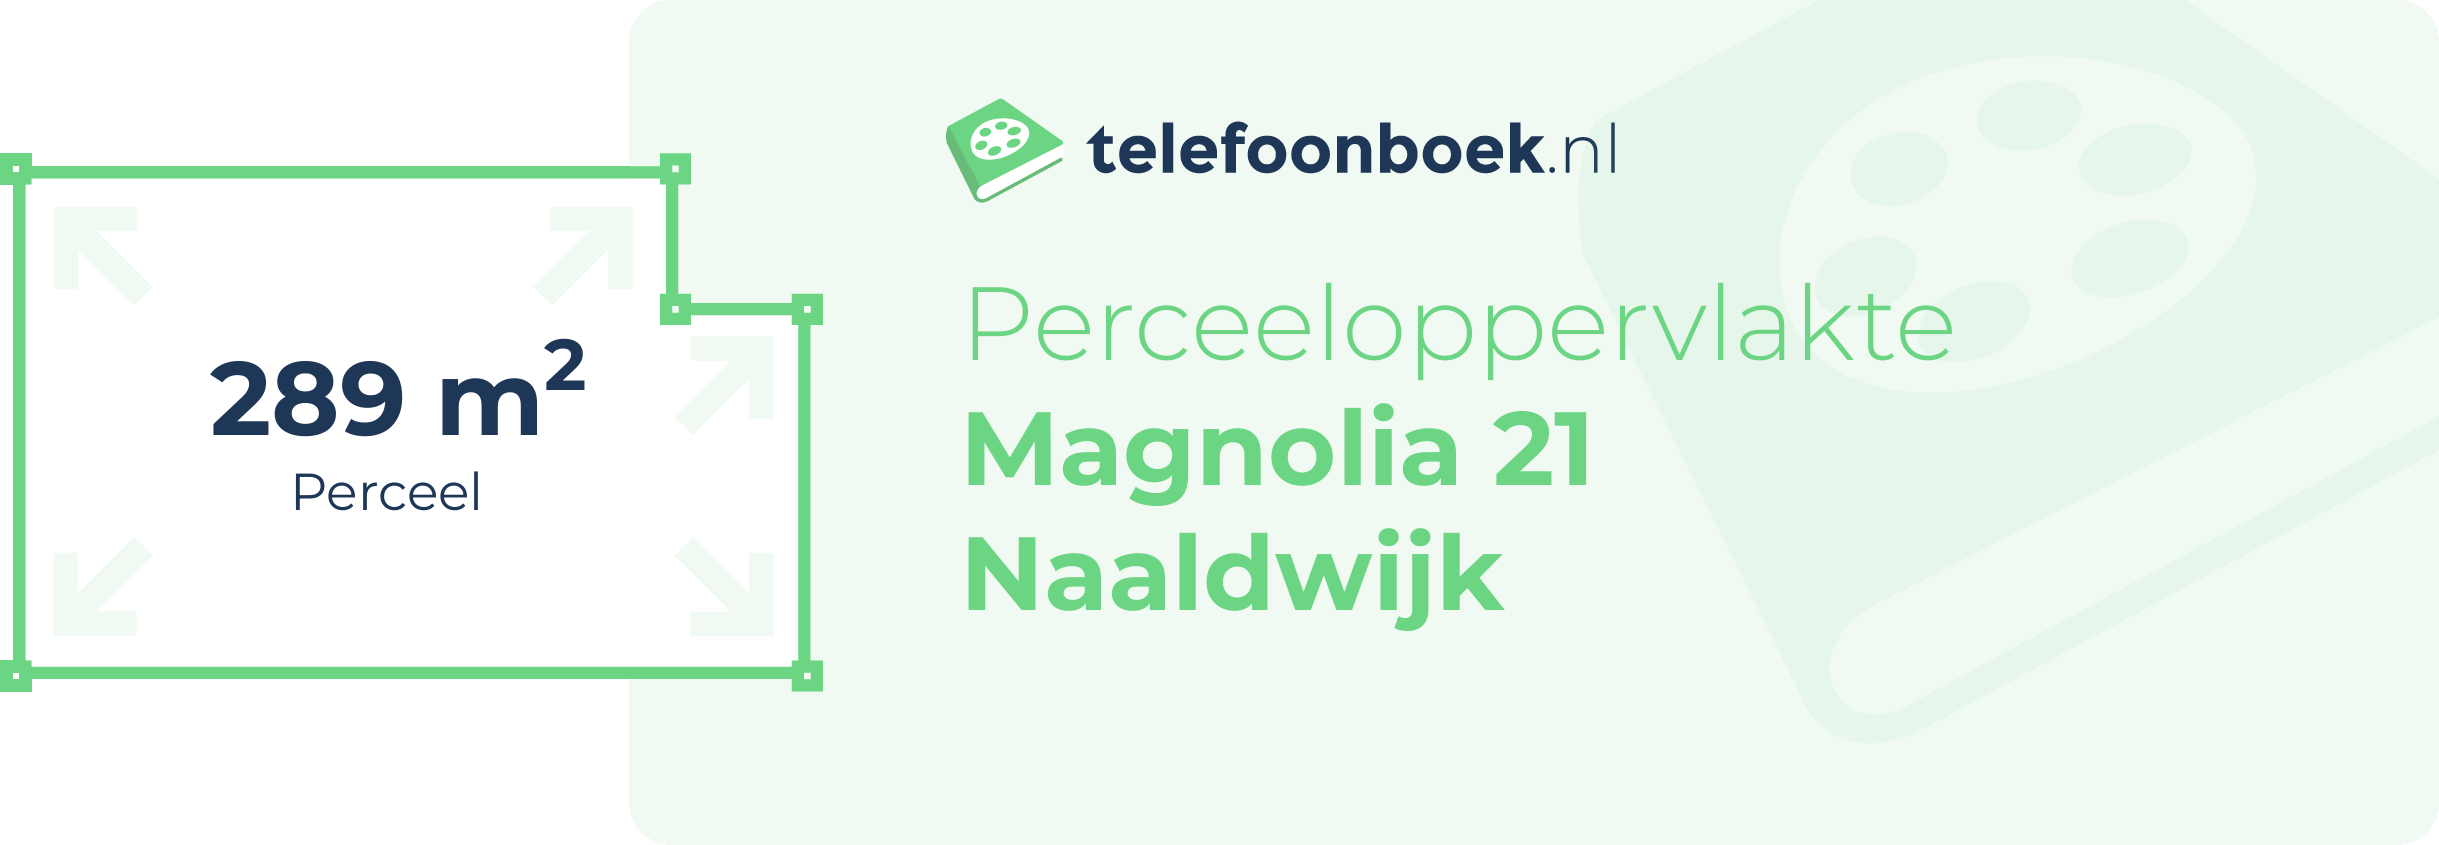 Perceeloppervlakte Magnolia 21 Naaldwijk